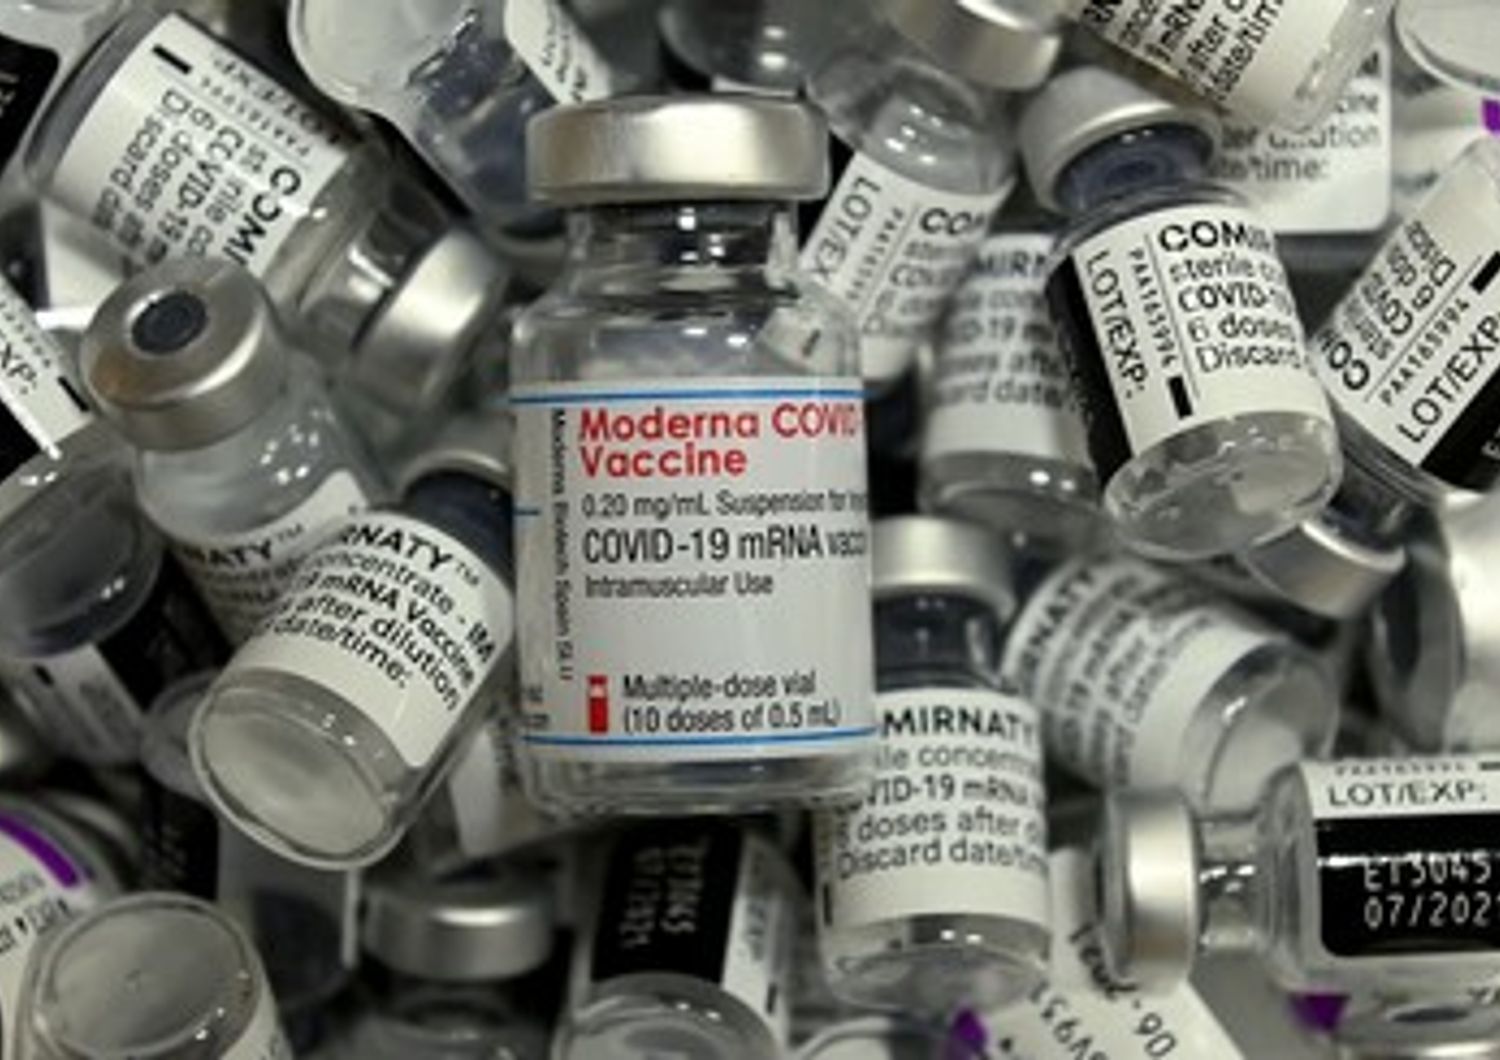 Vaccino Moderna